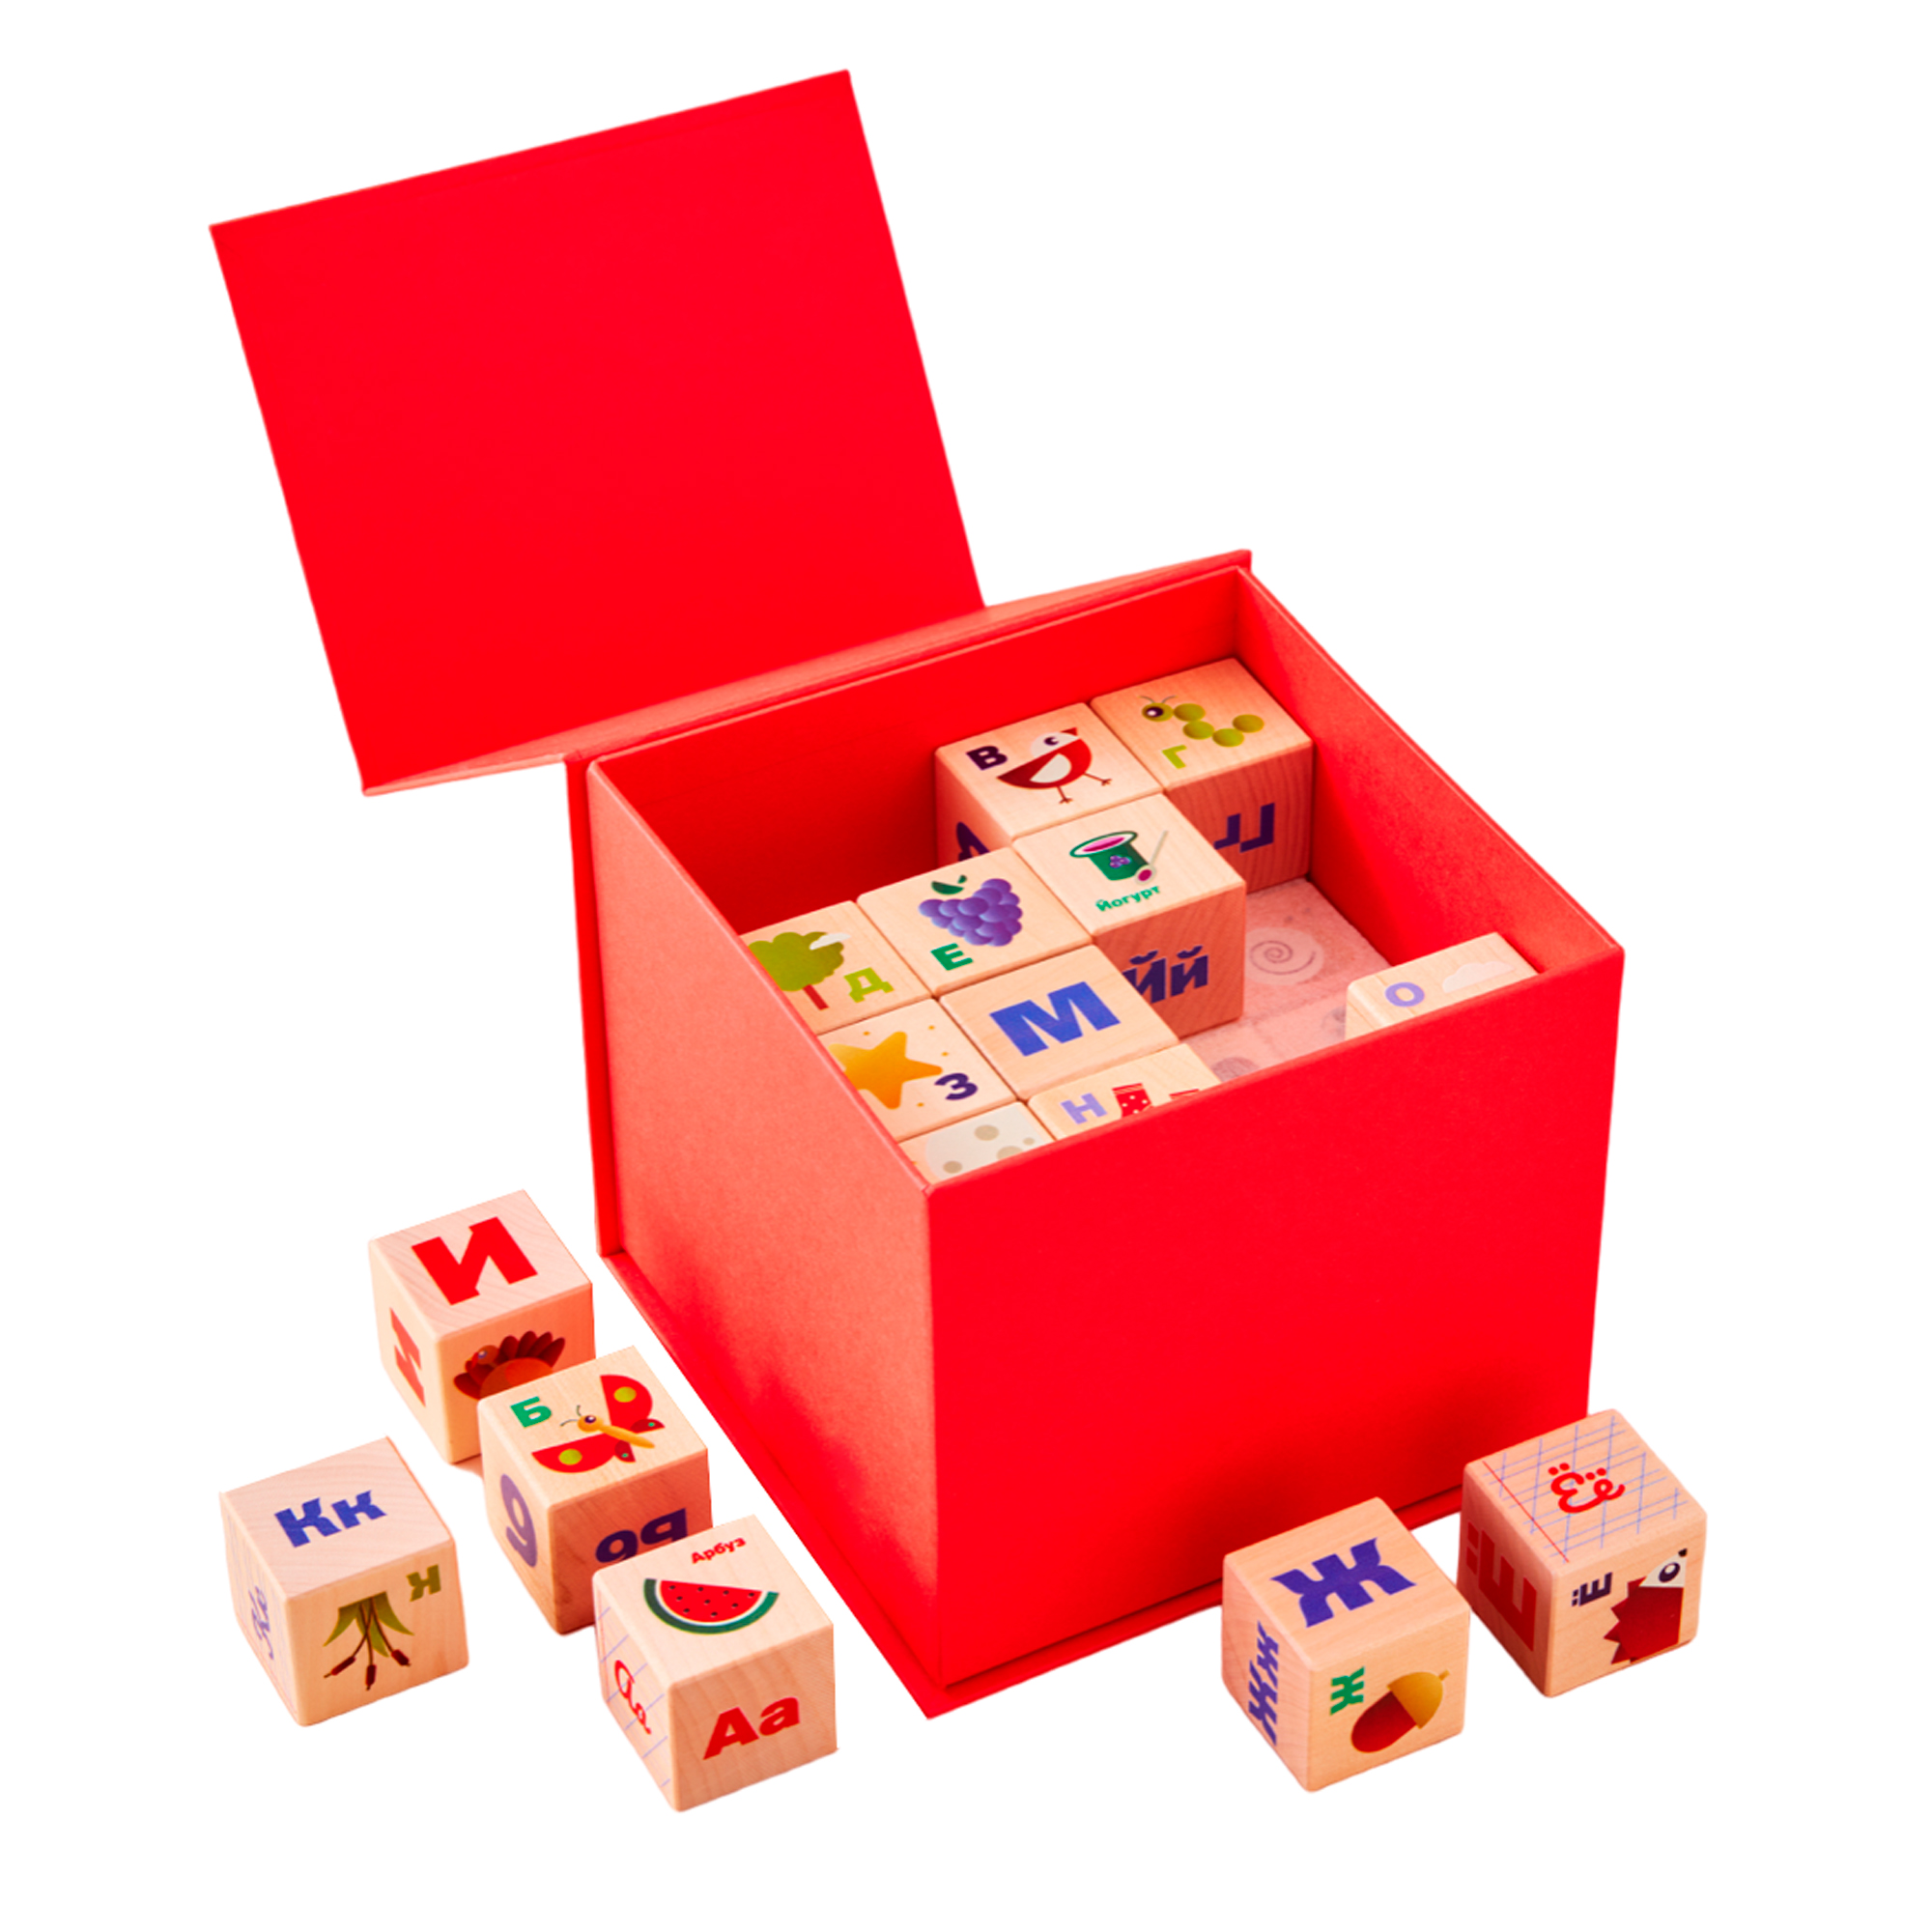 Обучающие Цветные Деревянные Кубики kibooq Лесная Азбука 48 шт. деревянные кубики со слогами читаю легко умница как научить ребенка быстро читать